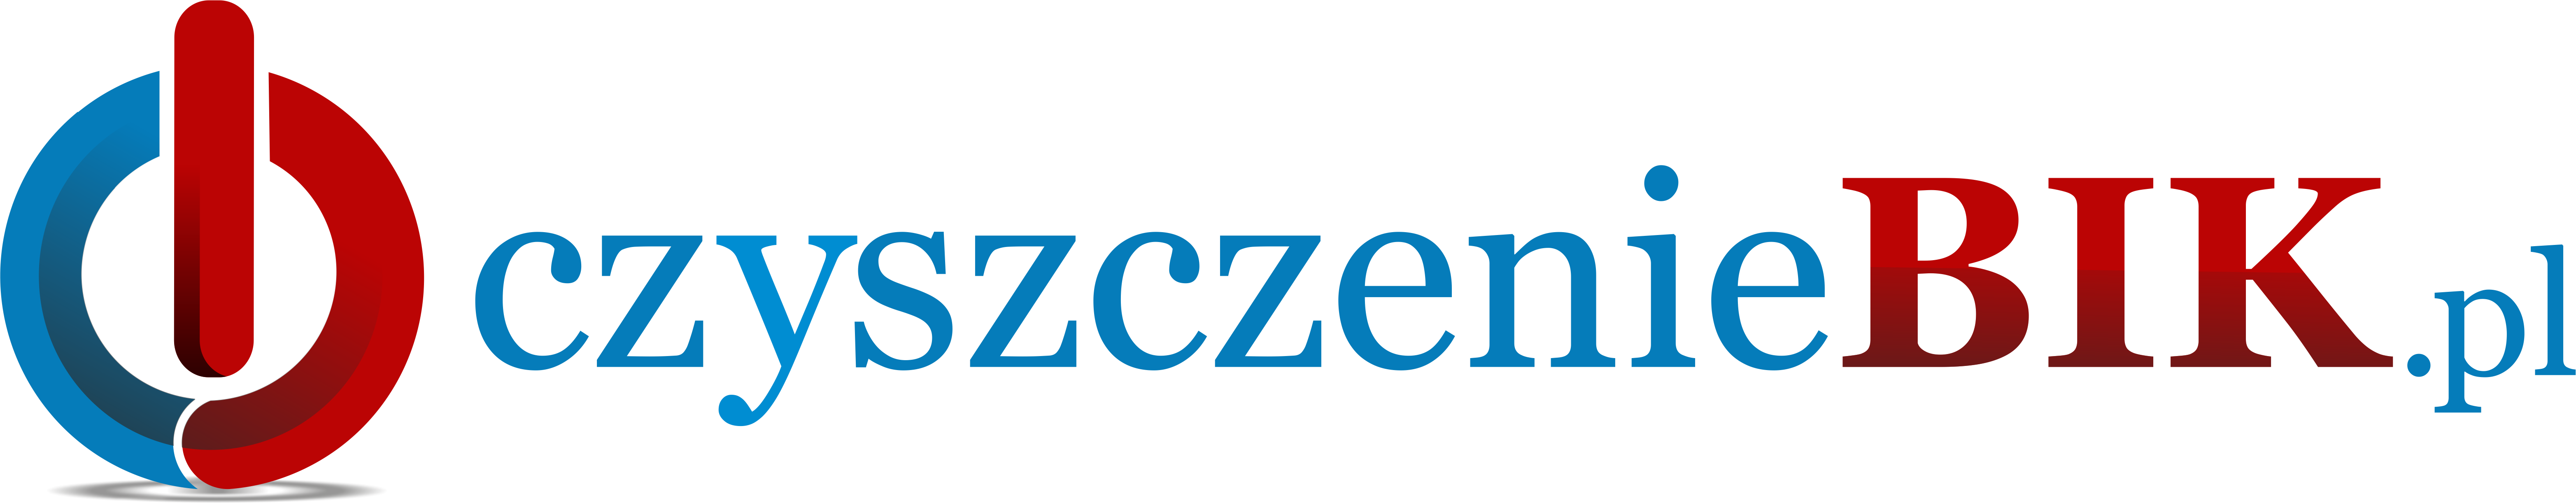 Logo - czyszczeniebik.pl